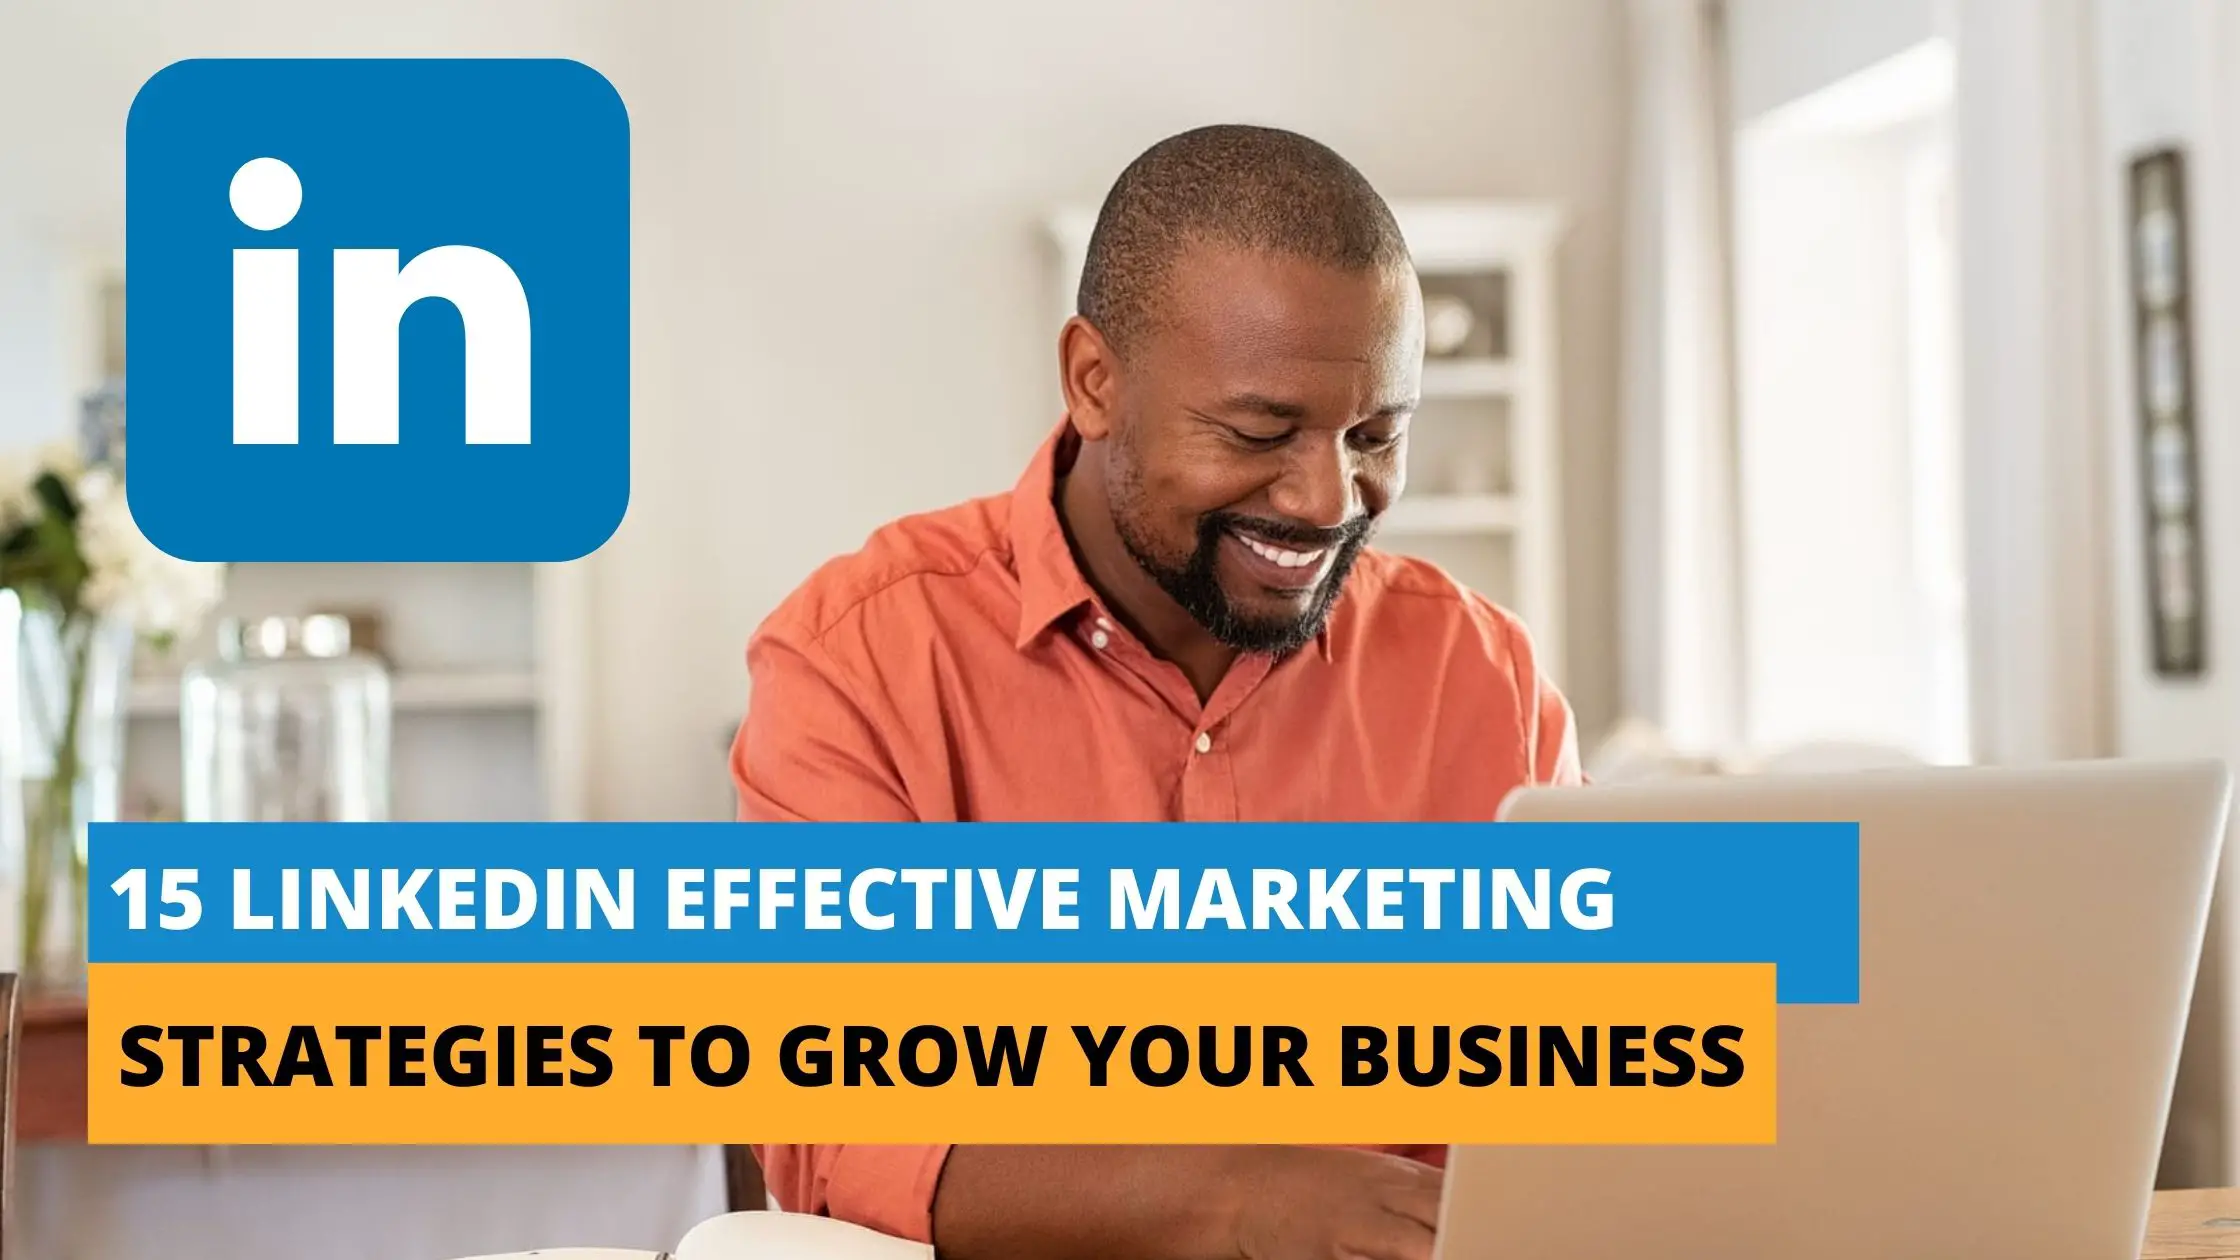 LinkedIn Marketing Strategies